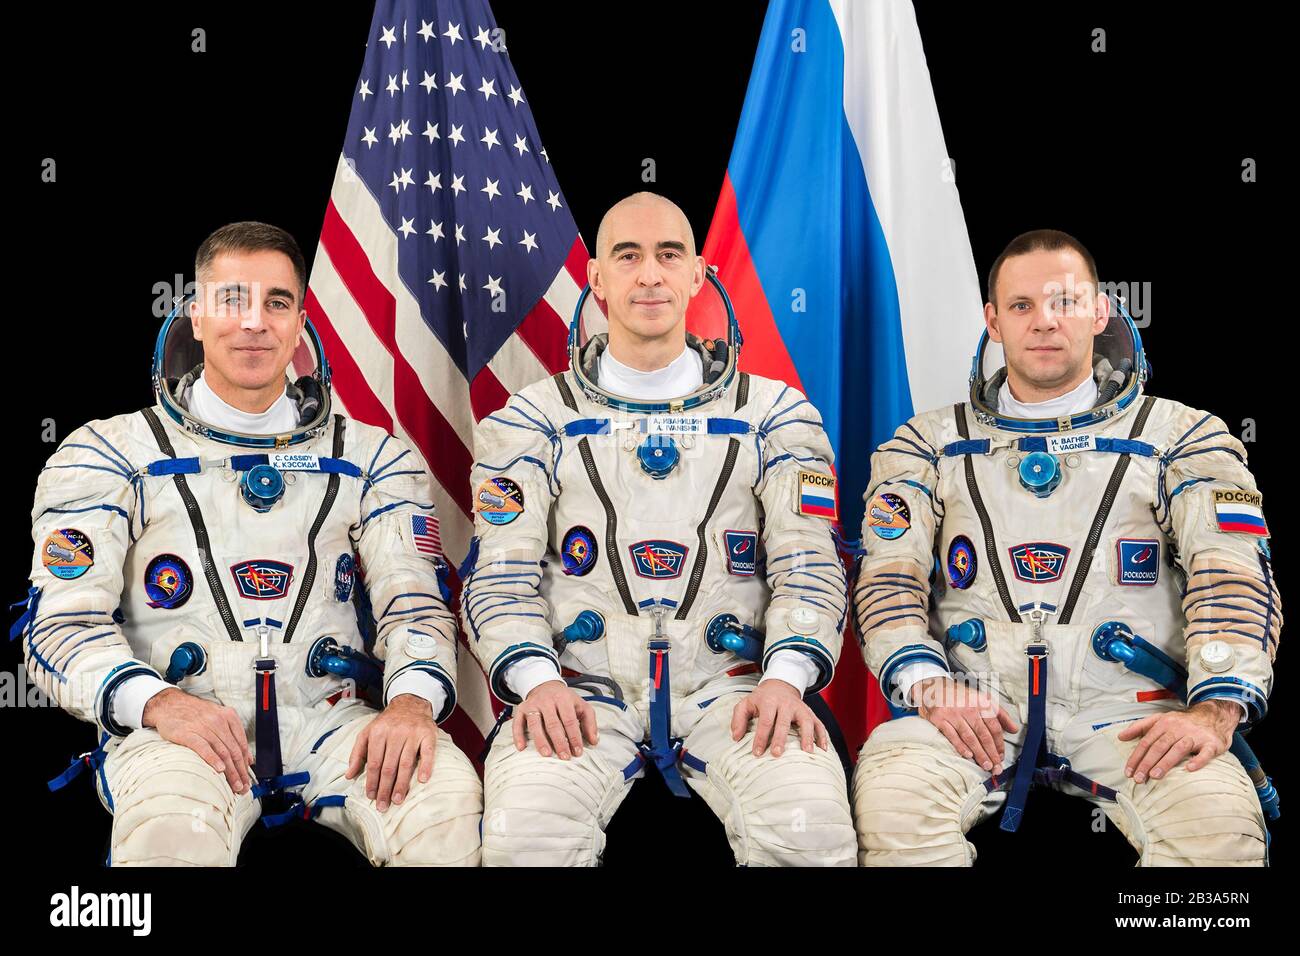 STERNENSTADT, RUSSLAND - 18. Dezember 2019 - Die Prime Expedition 63 Crewmitglieder posieren für ein Porträt im Gagarin Cosmonaut Training Center in Star City, Russi Stockfoto